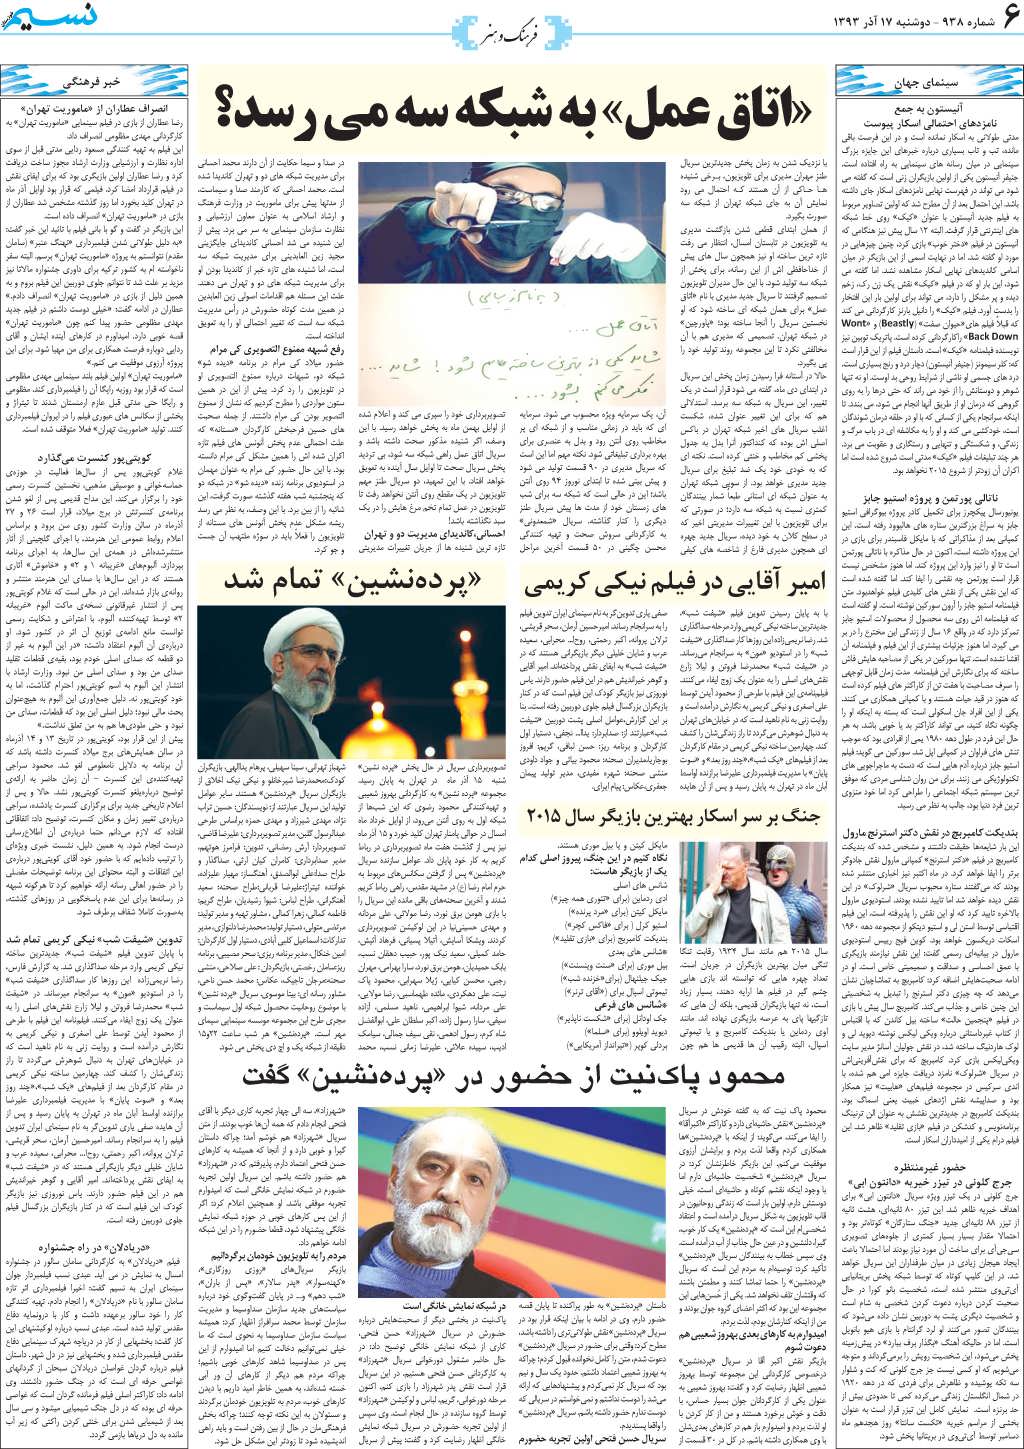 صفحه فرهنگ و هنر روزنامه نسیم شماره 938